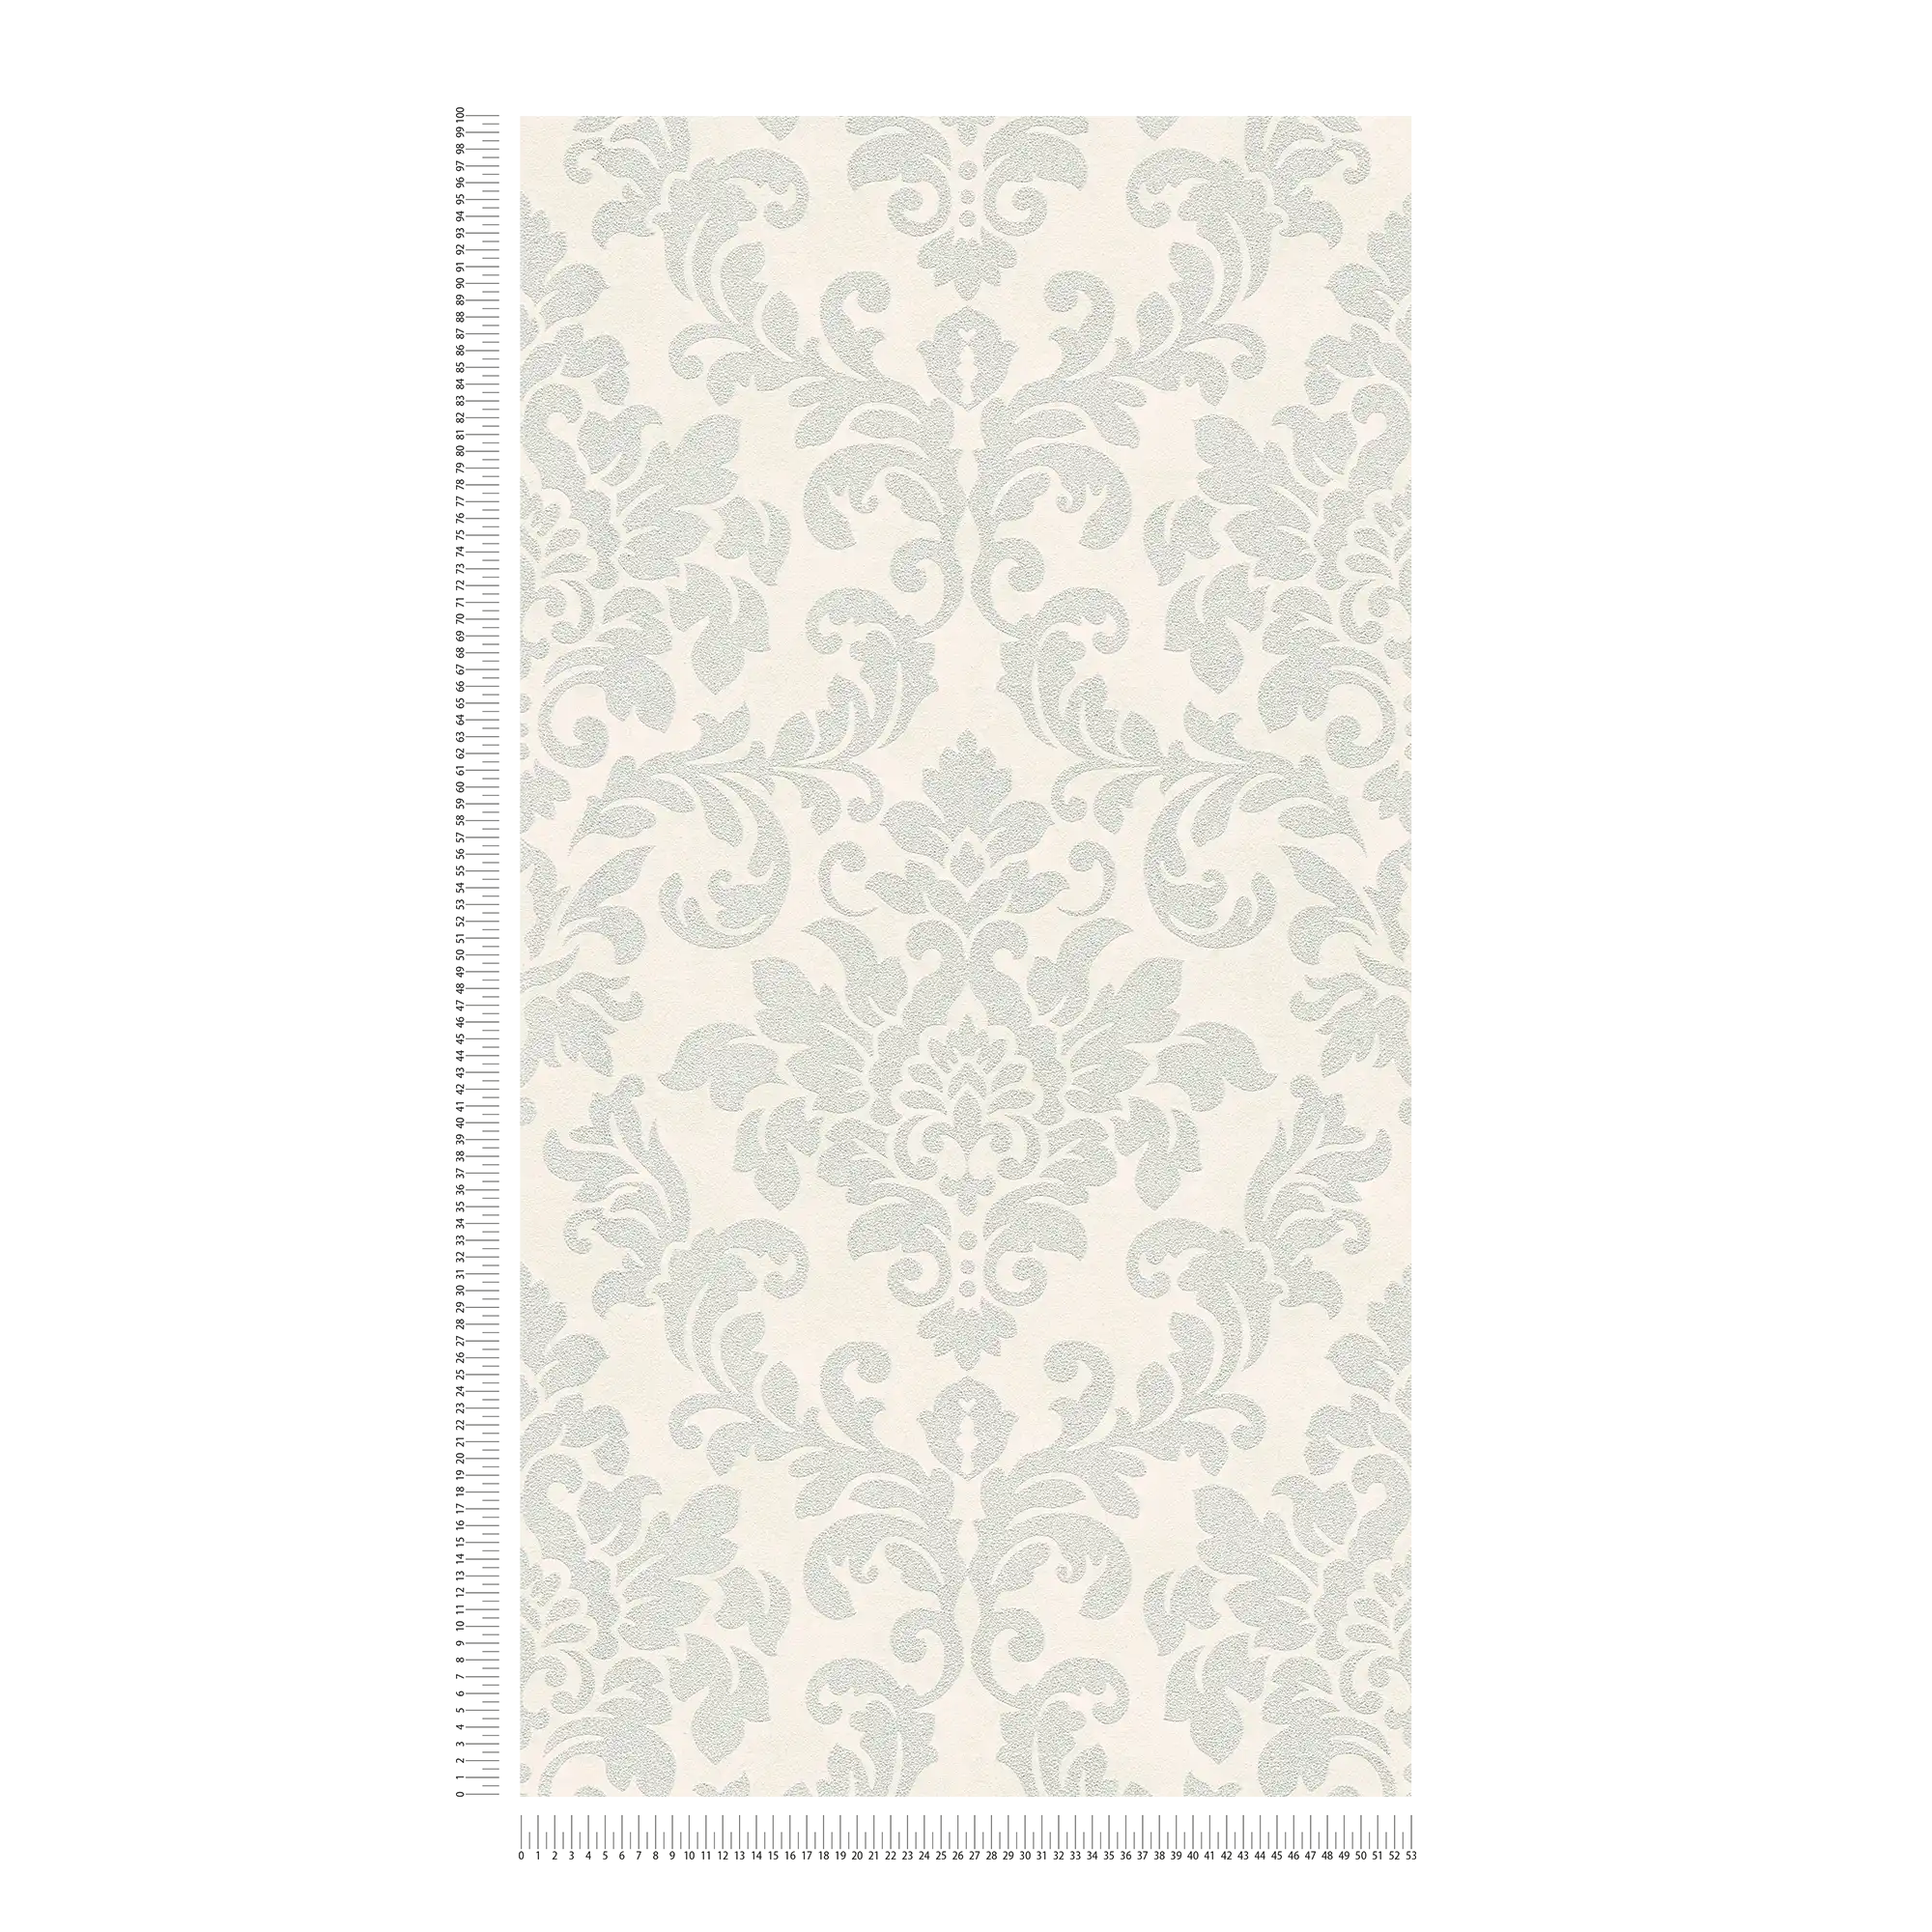             Carta da parati ornamentale floreale con effetto metallizzato - grigio, argento, bianco
        